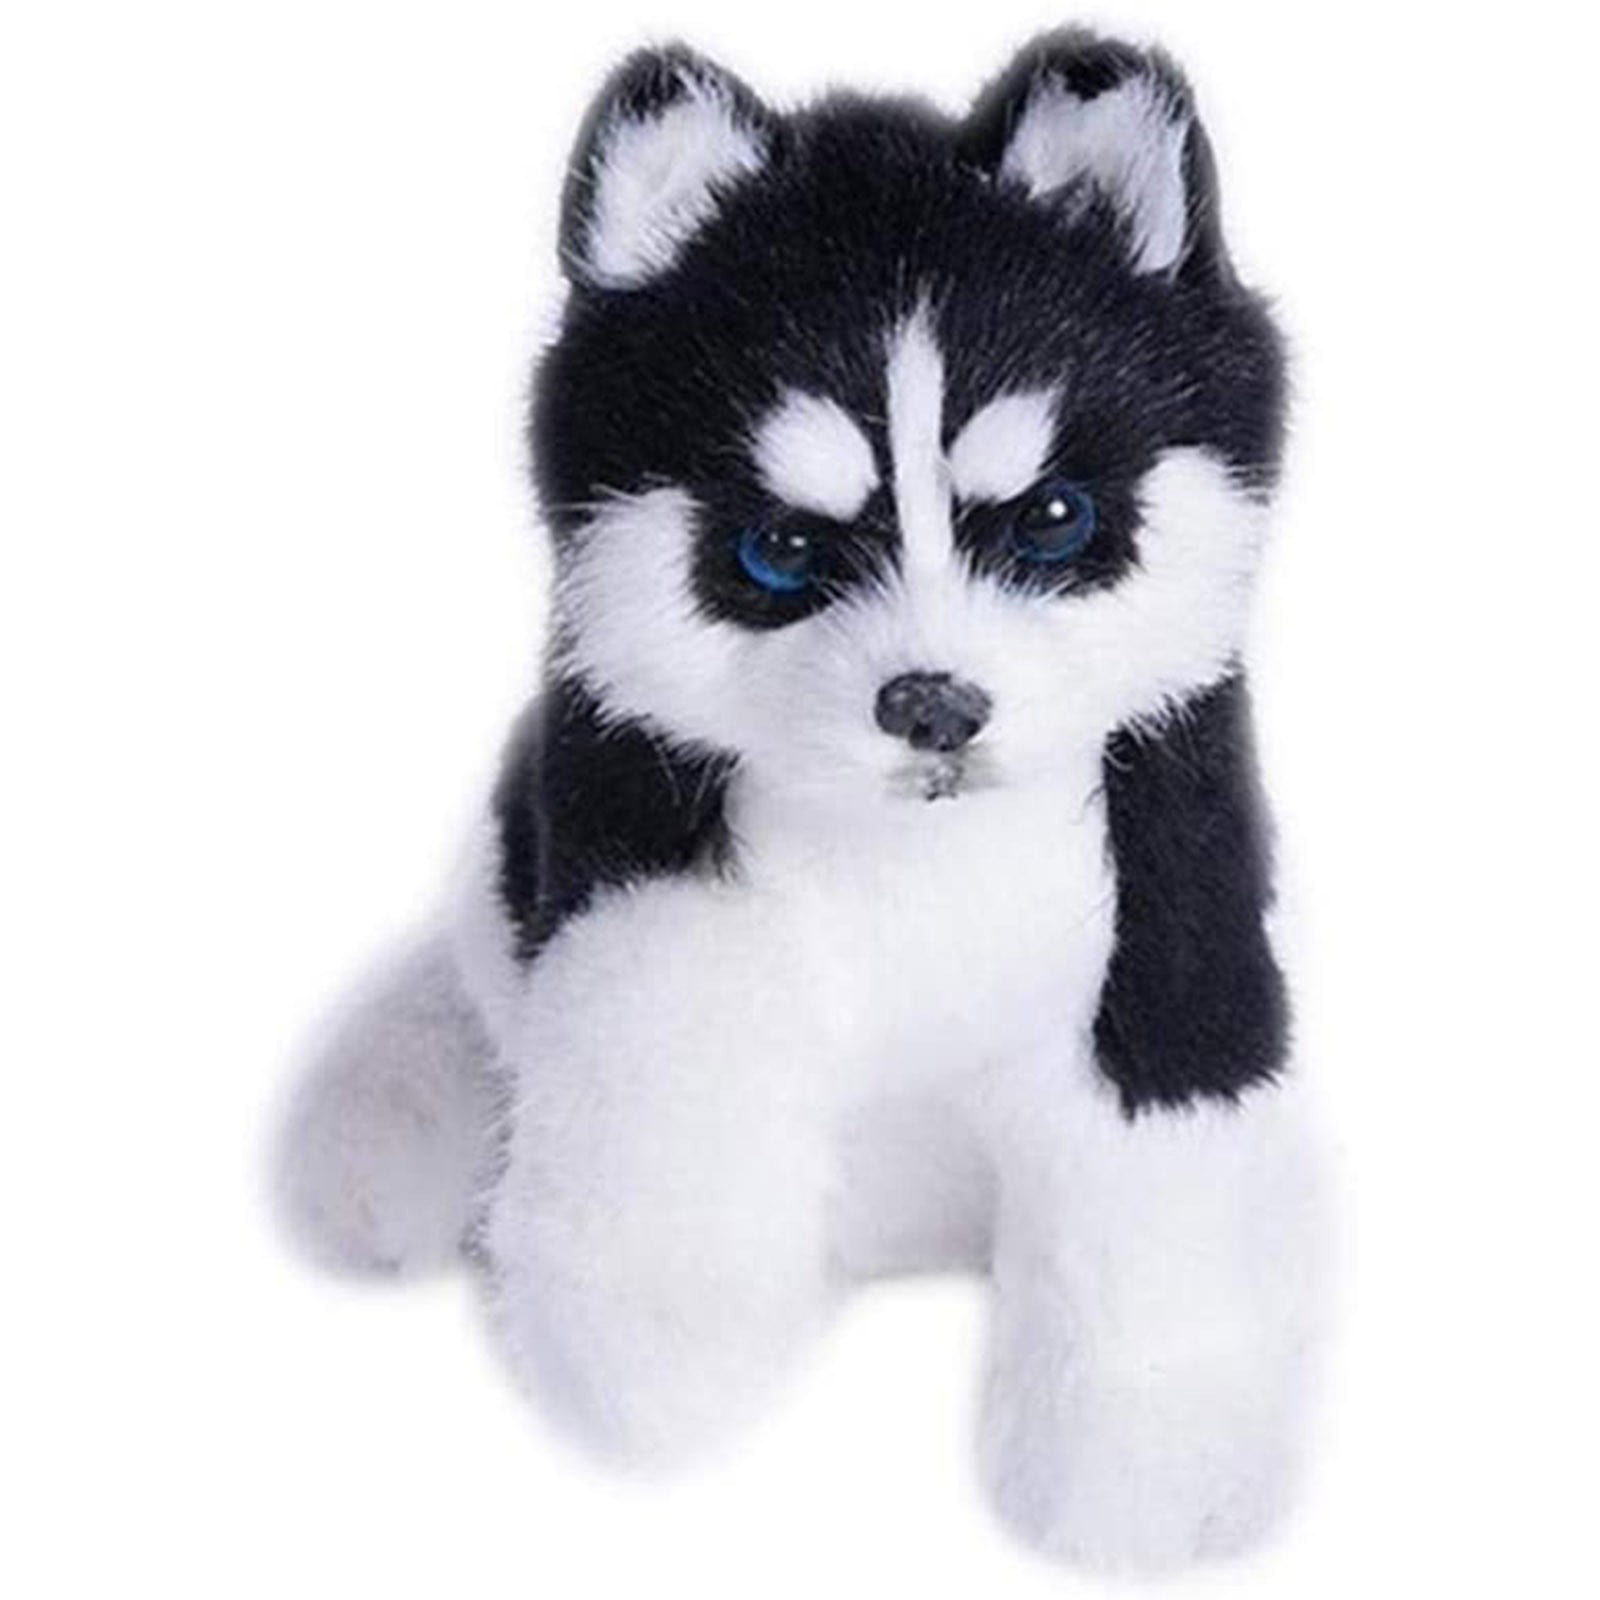 Plush Dog SIBERIAN HUSKY Stuffed Collectible Animal Cute Christmas Gift Toy 